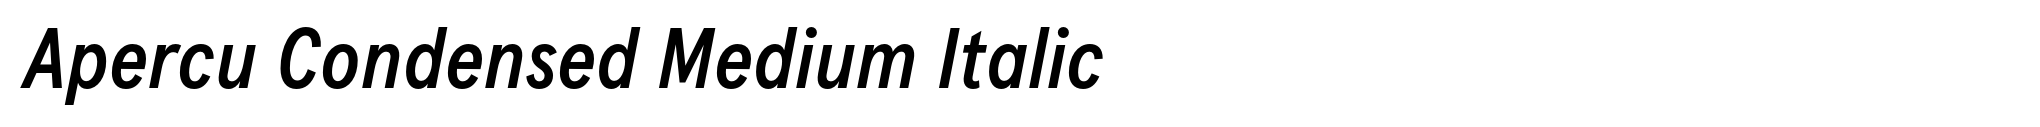 Apercu Condensed Medium Italic image